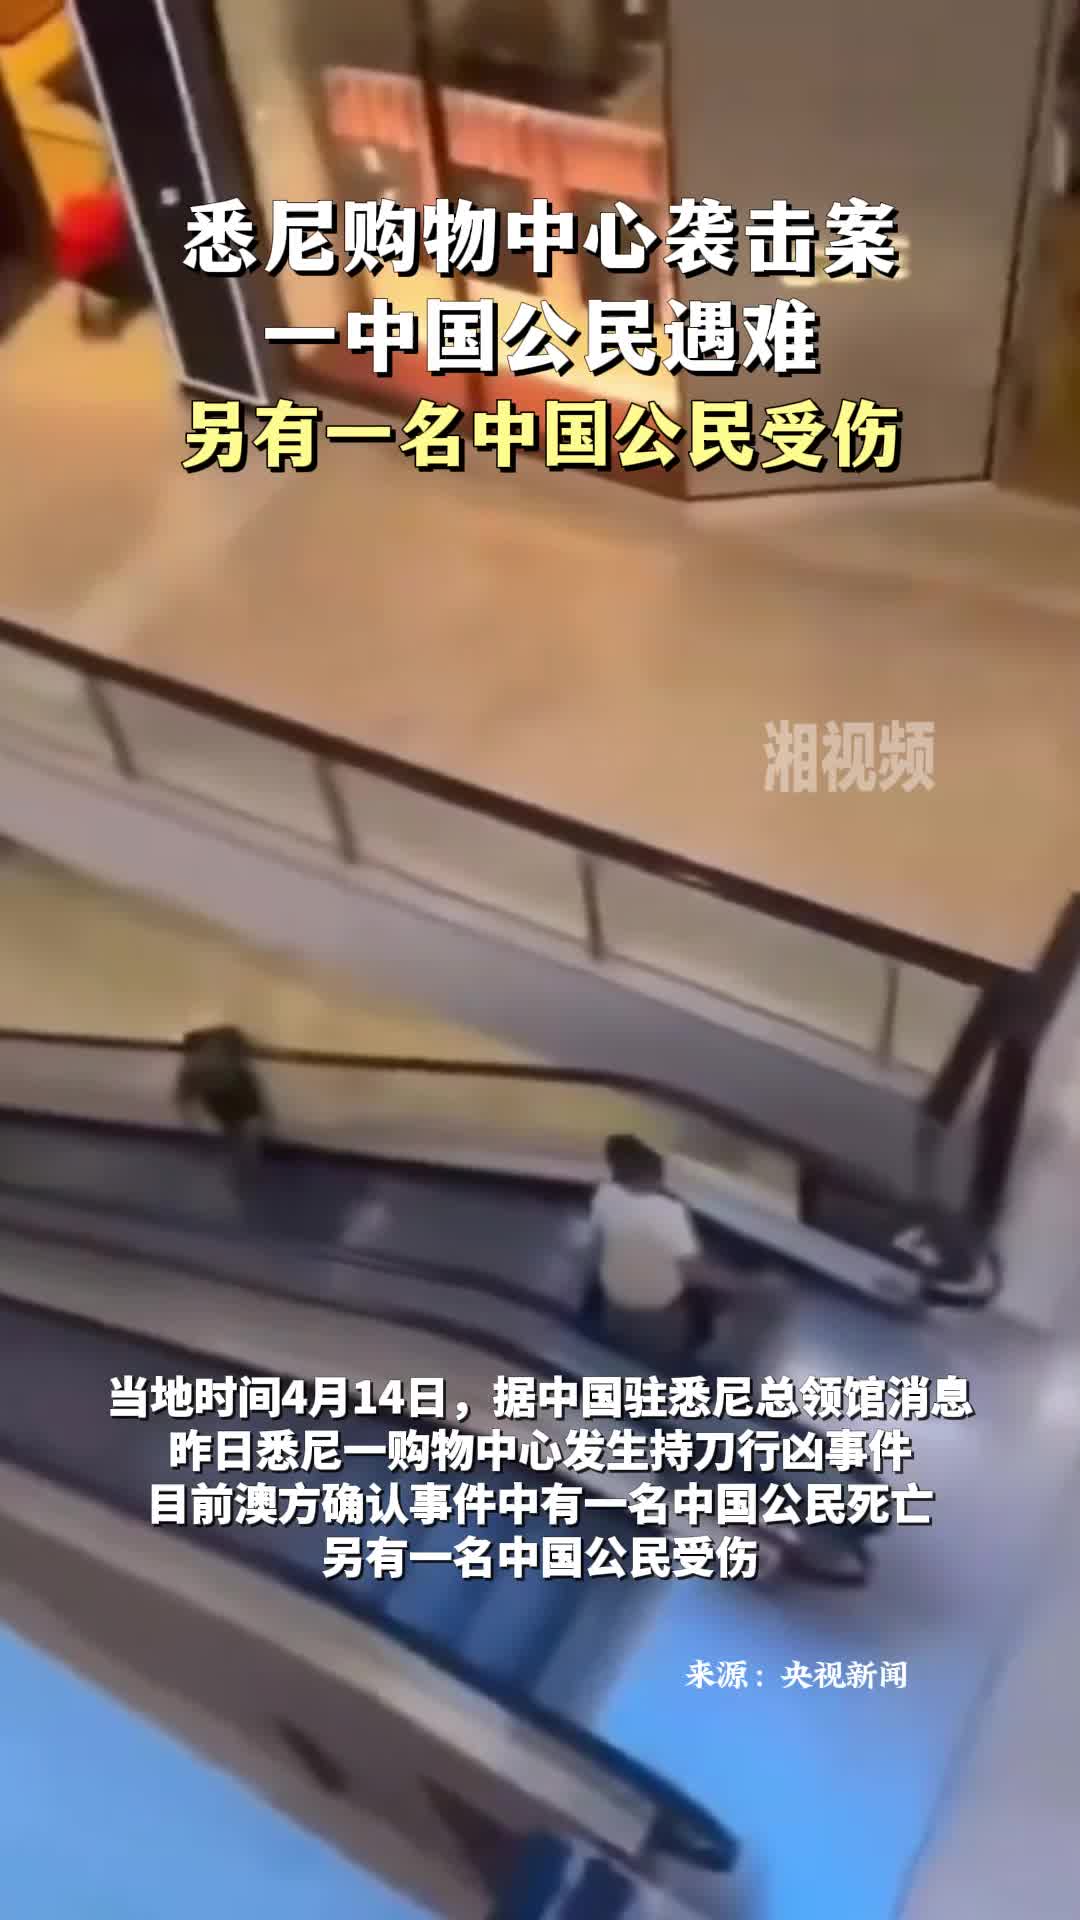 悉尼购物中心袭击案一中国公民遇难，另有一名中国公民受伤